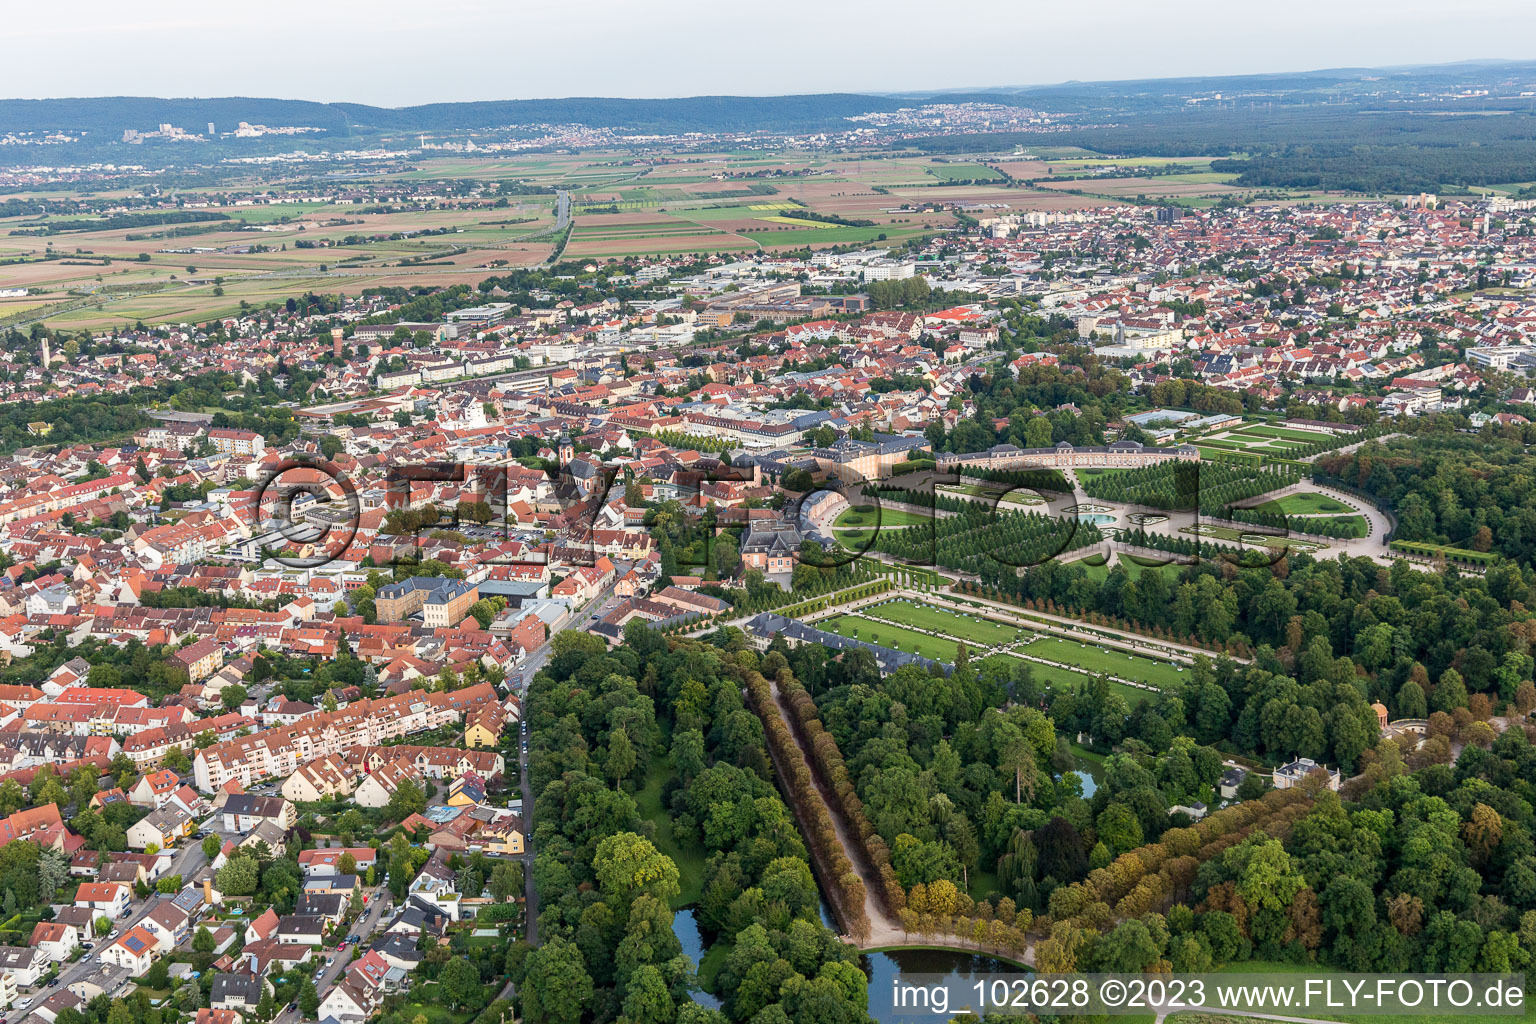 Vue aérienne de Parc du château à Schwetzingen dans le département Bade-Wurtemberg, Allemagne